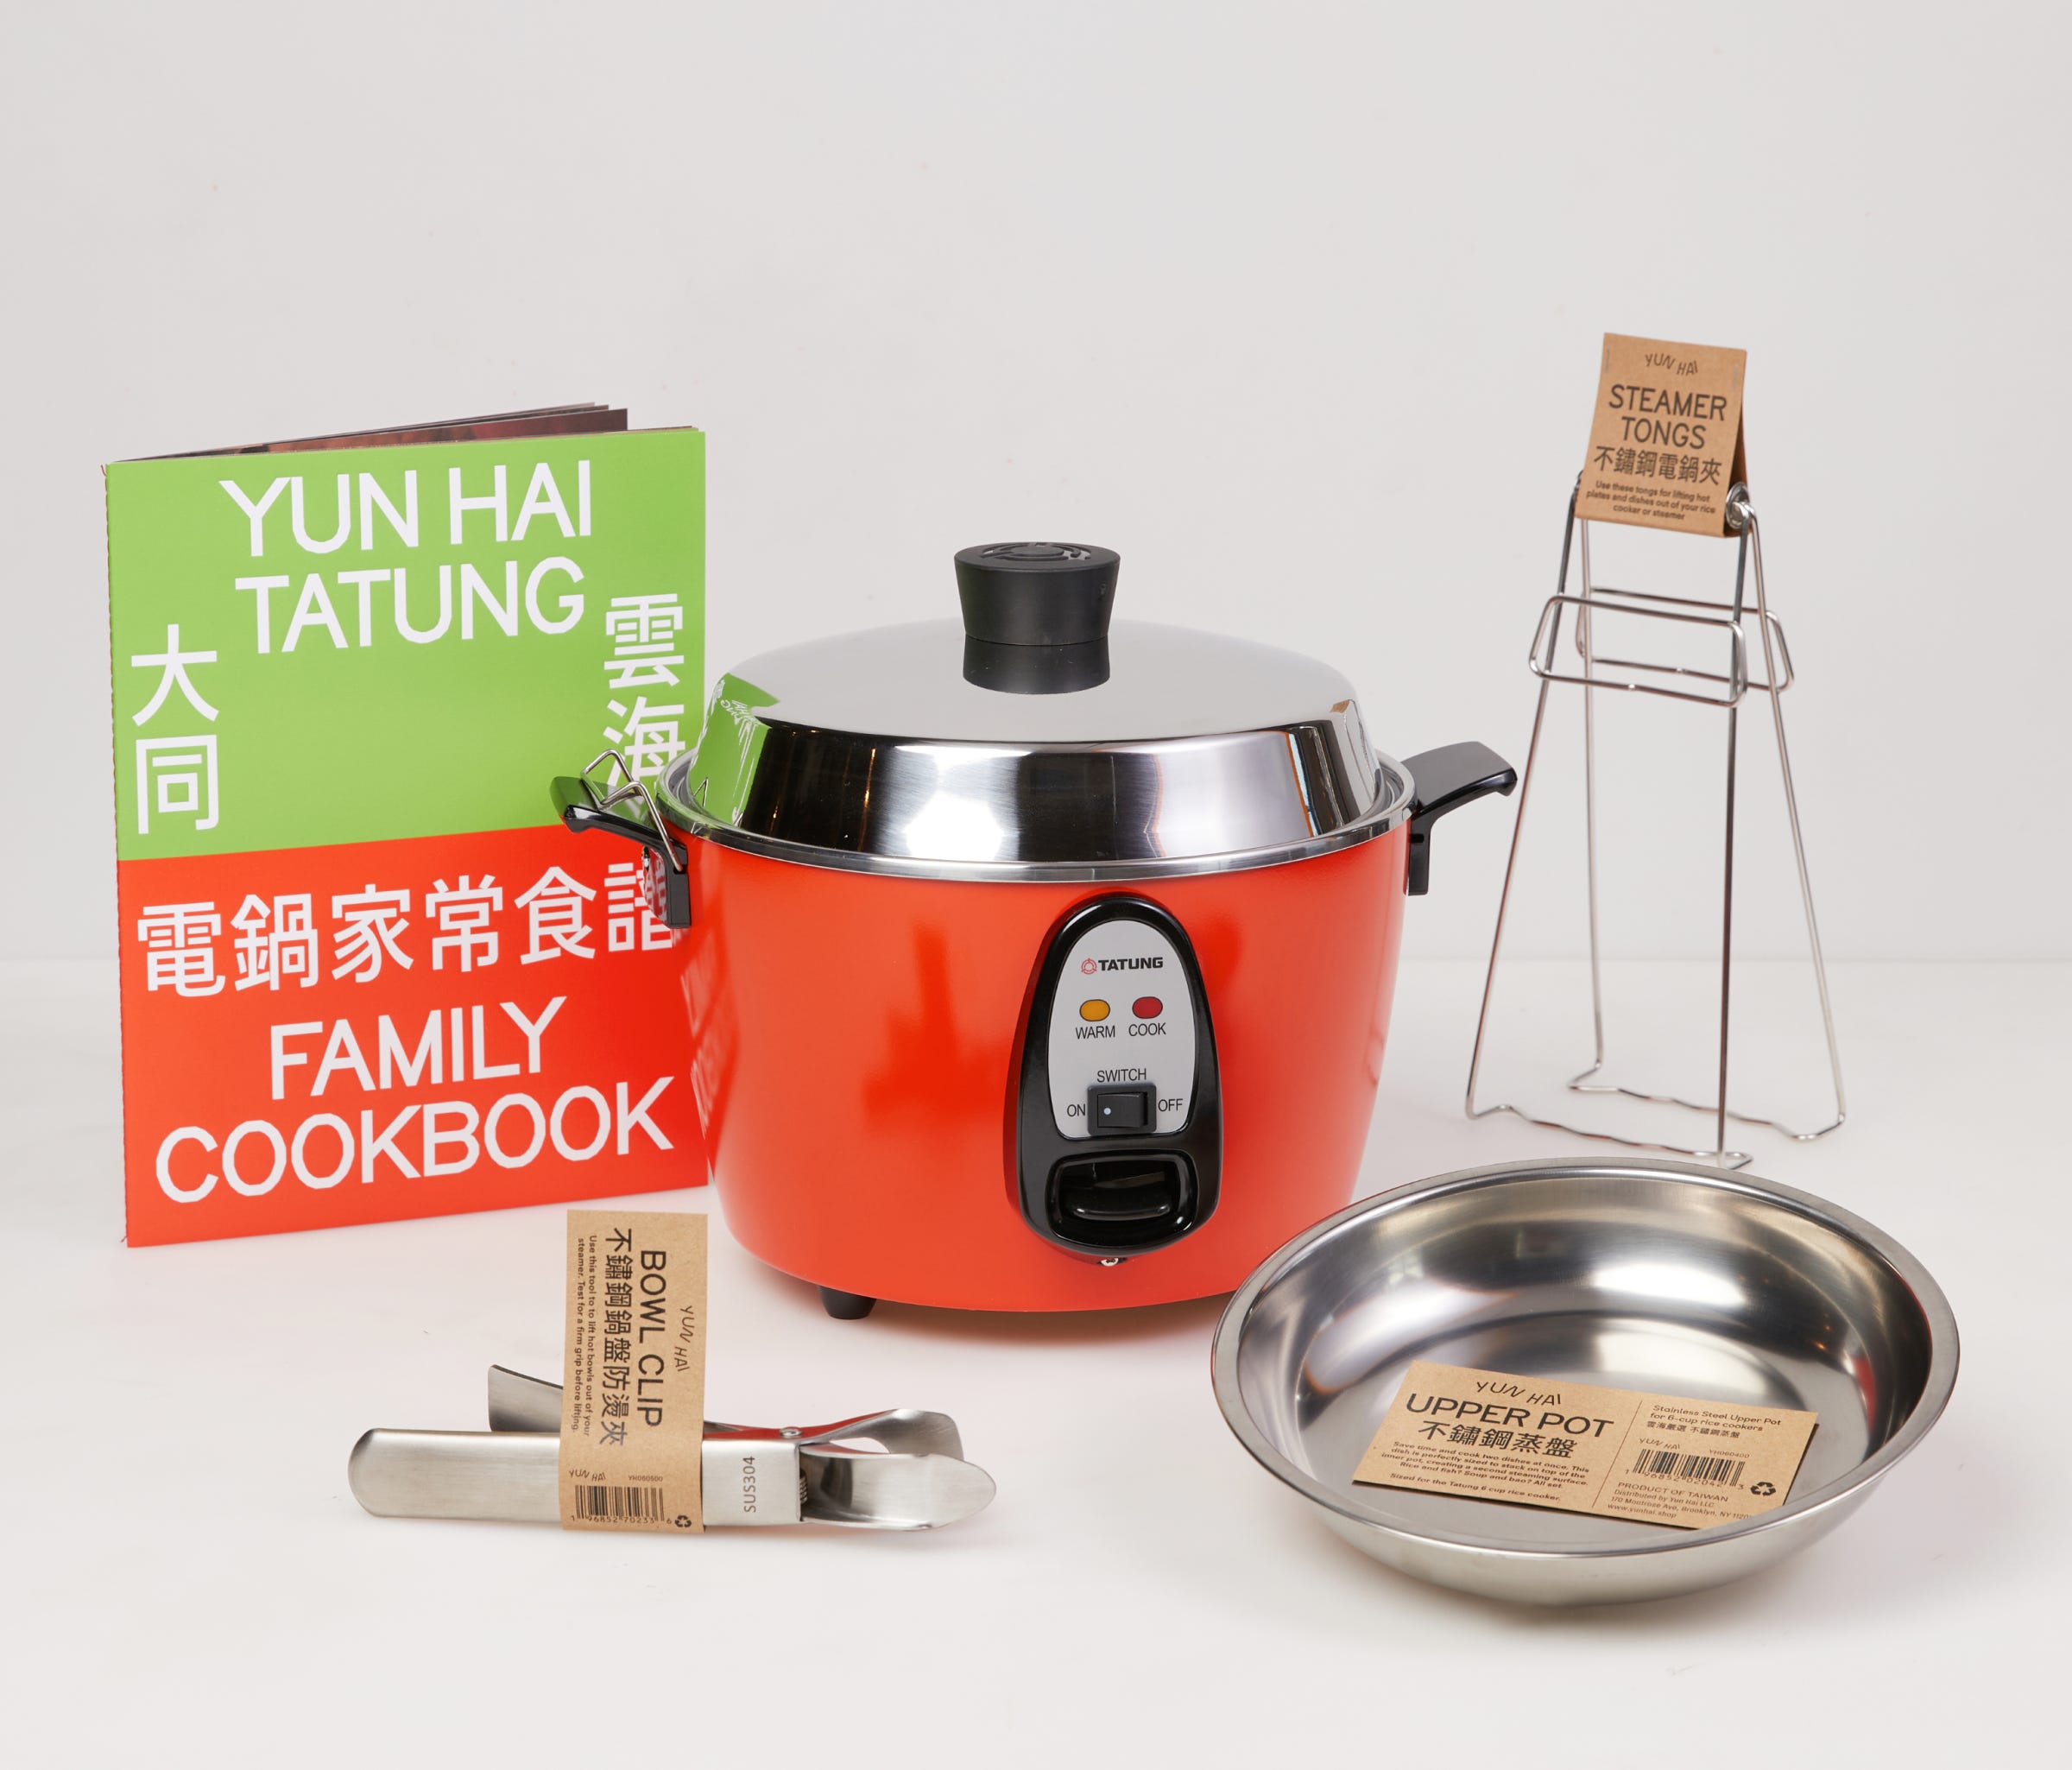 大同電鍋: Taiwan and its Steam Cooker - by Lisa Cheng Smith